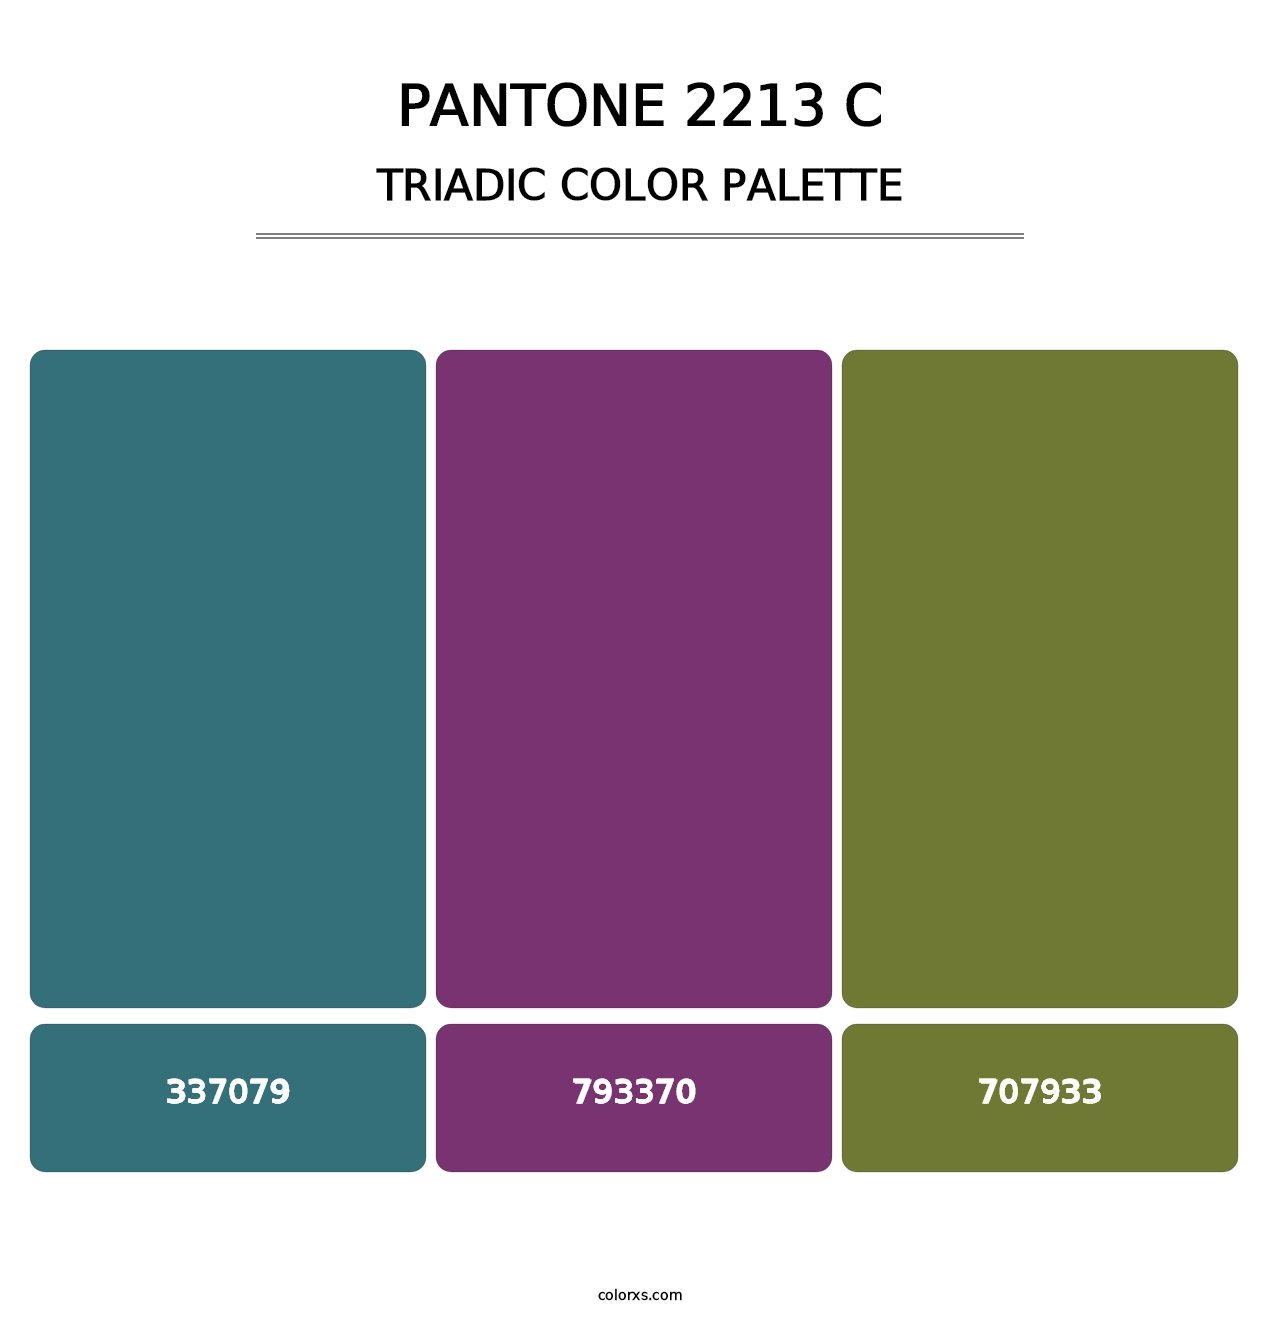 PANTONE 2213 C - Triadic Color Palette